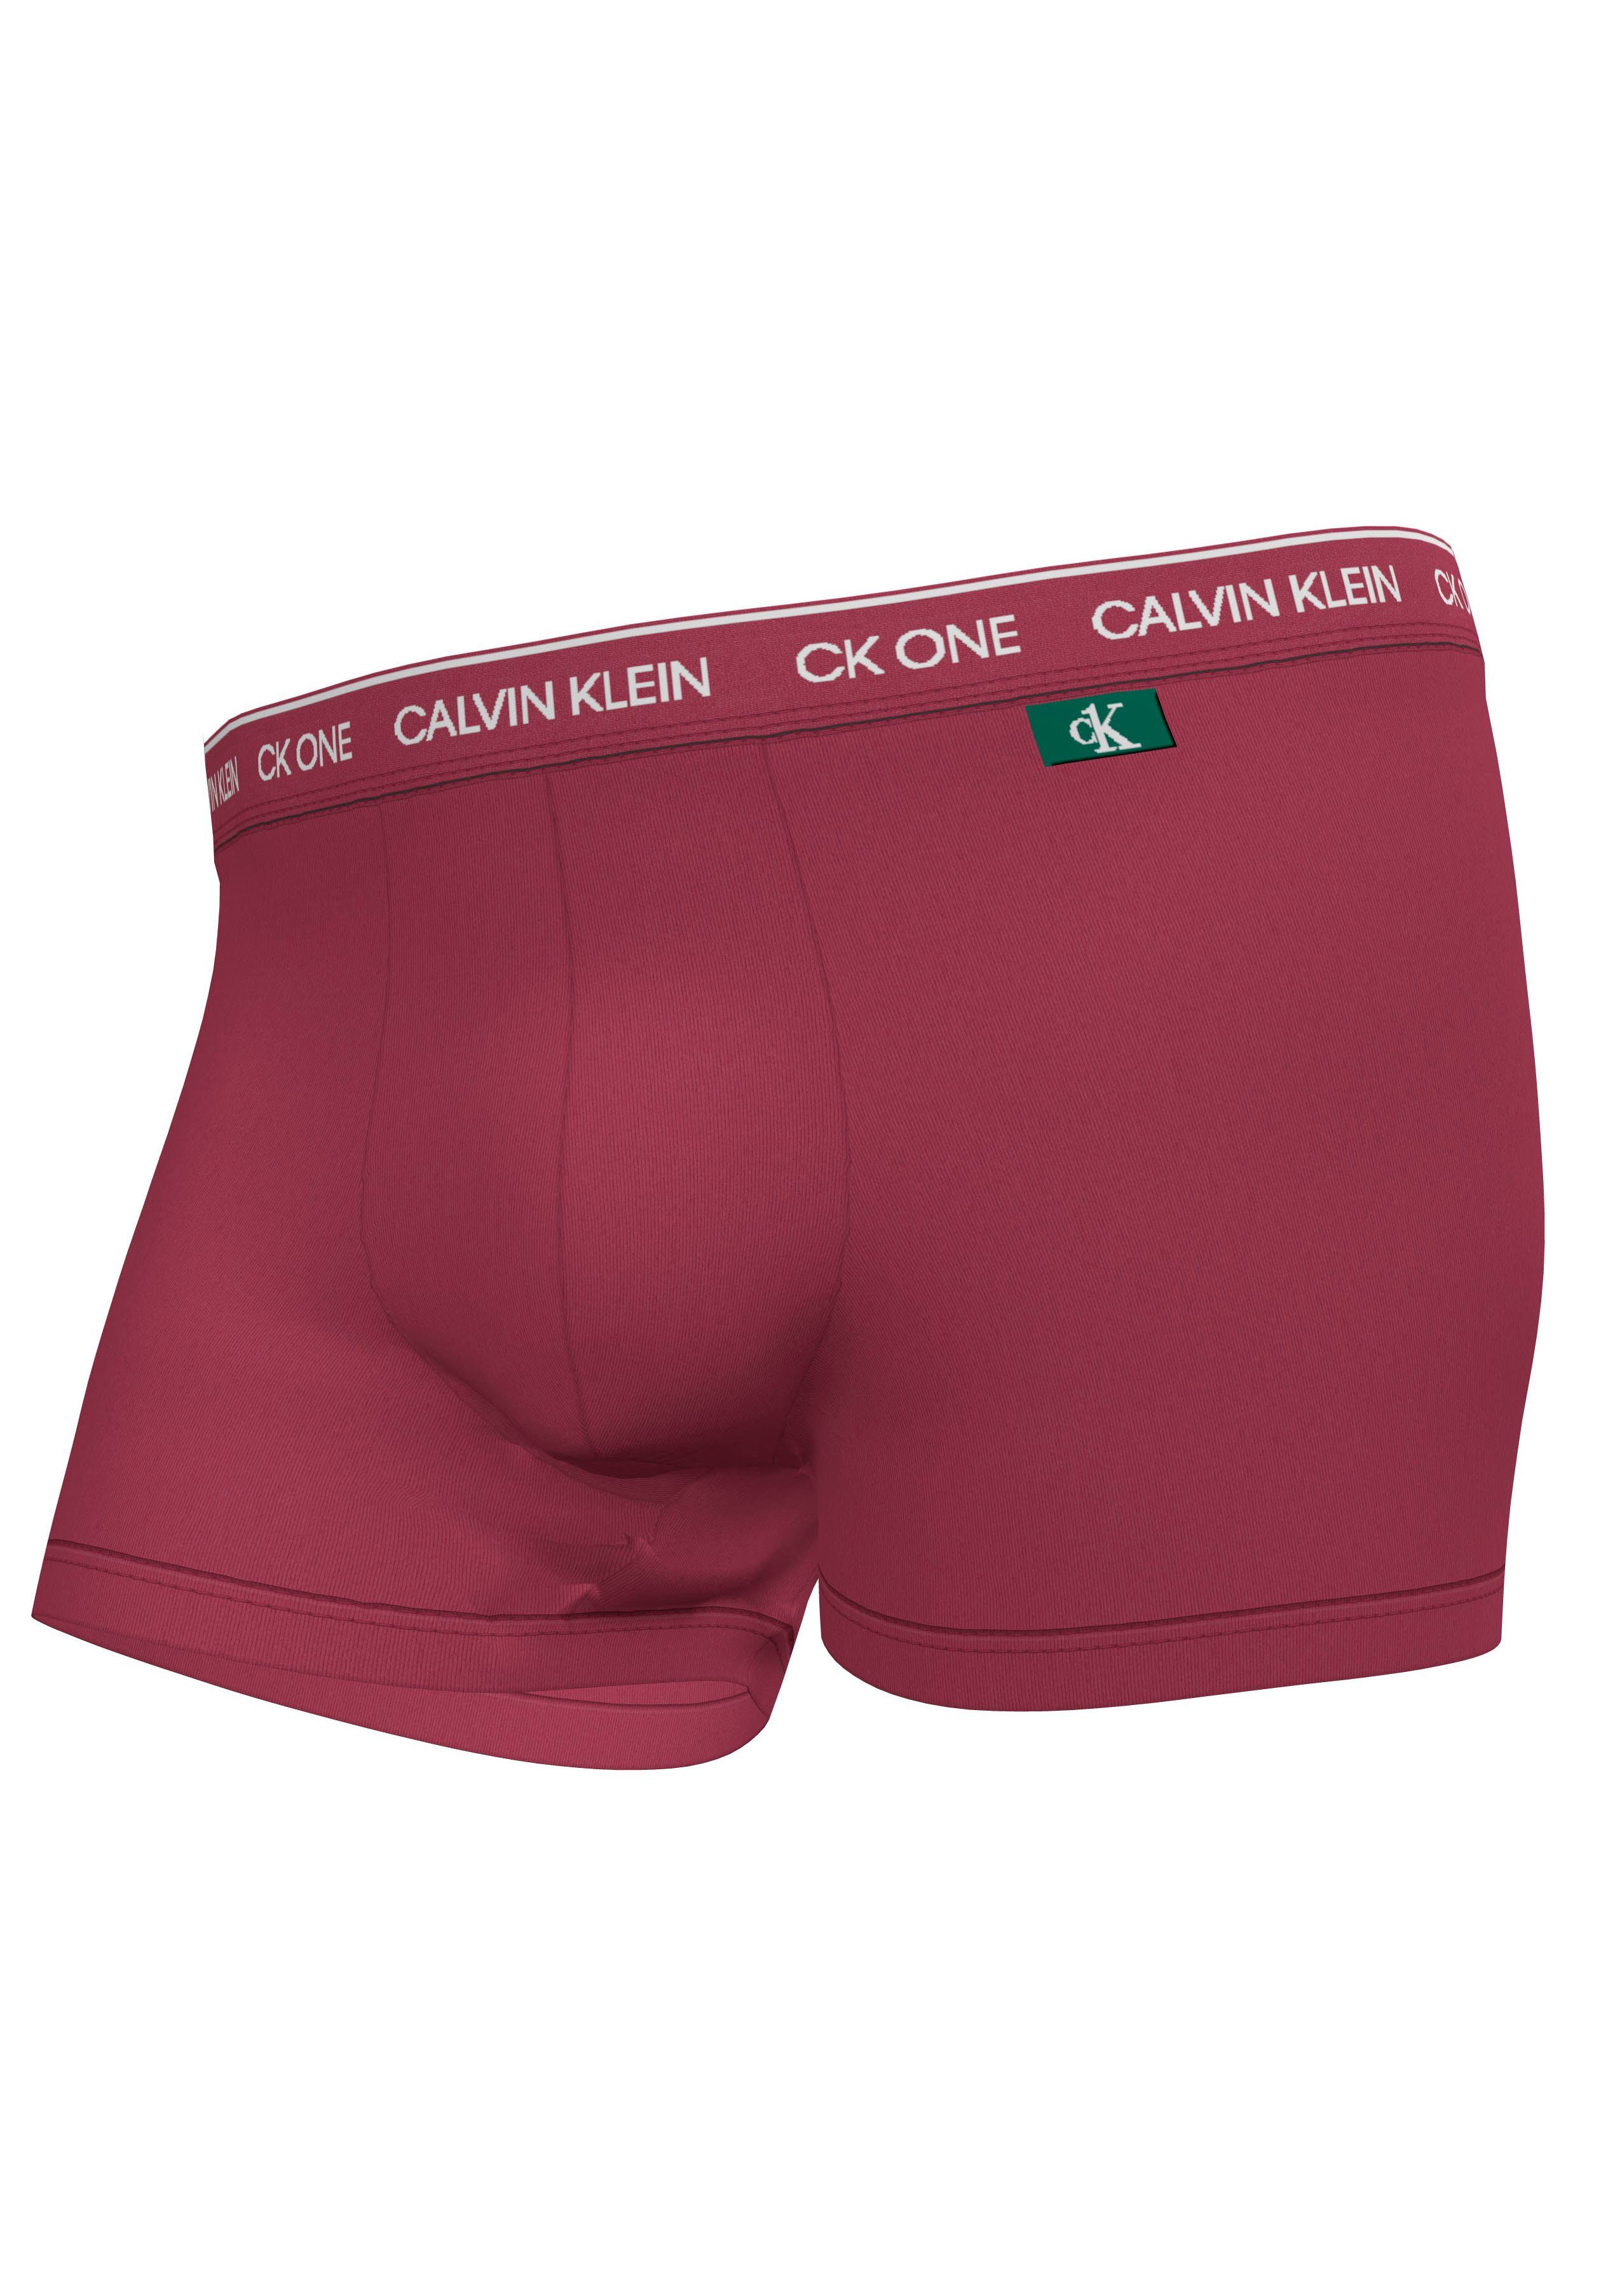 Calvin Klein Boxer in Mikrofaser-Qualität kaufen | OTTO